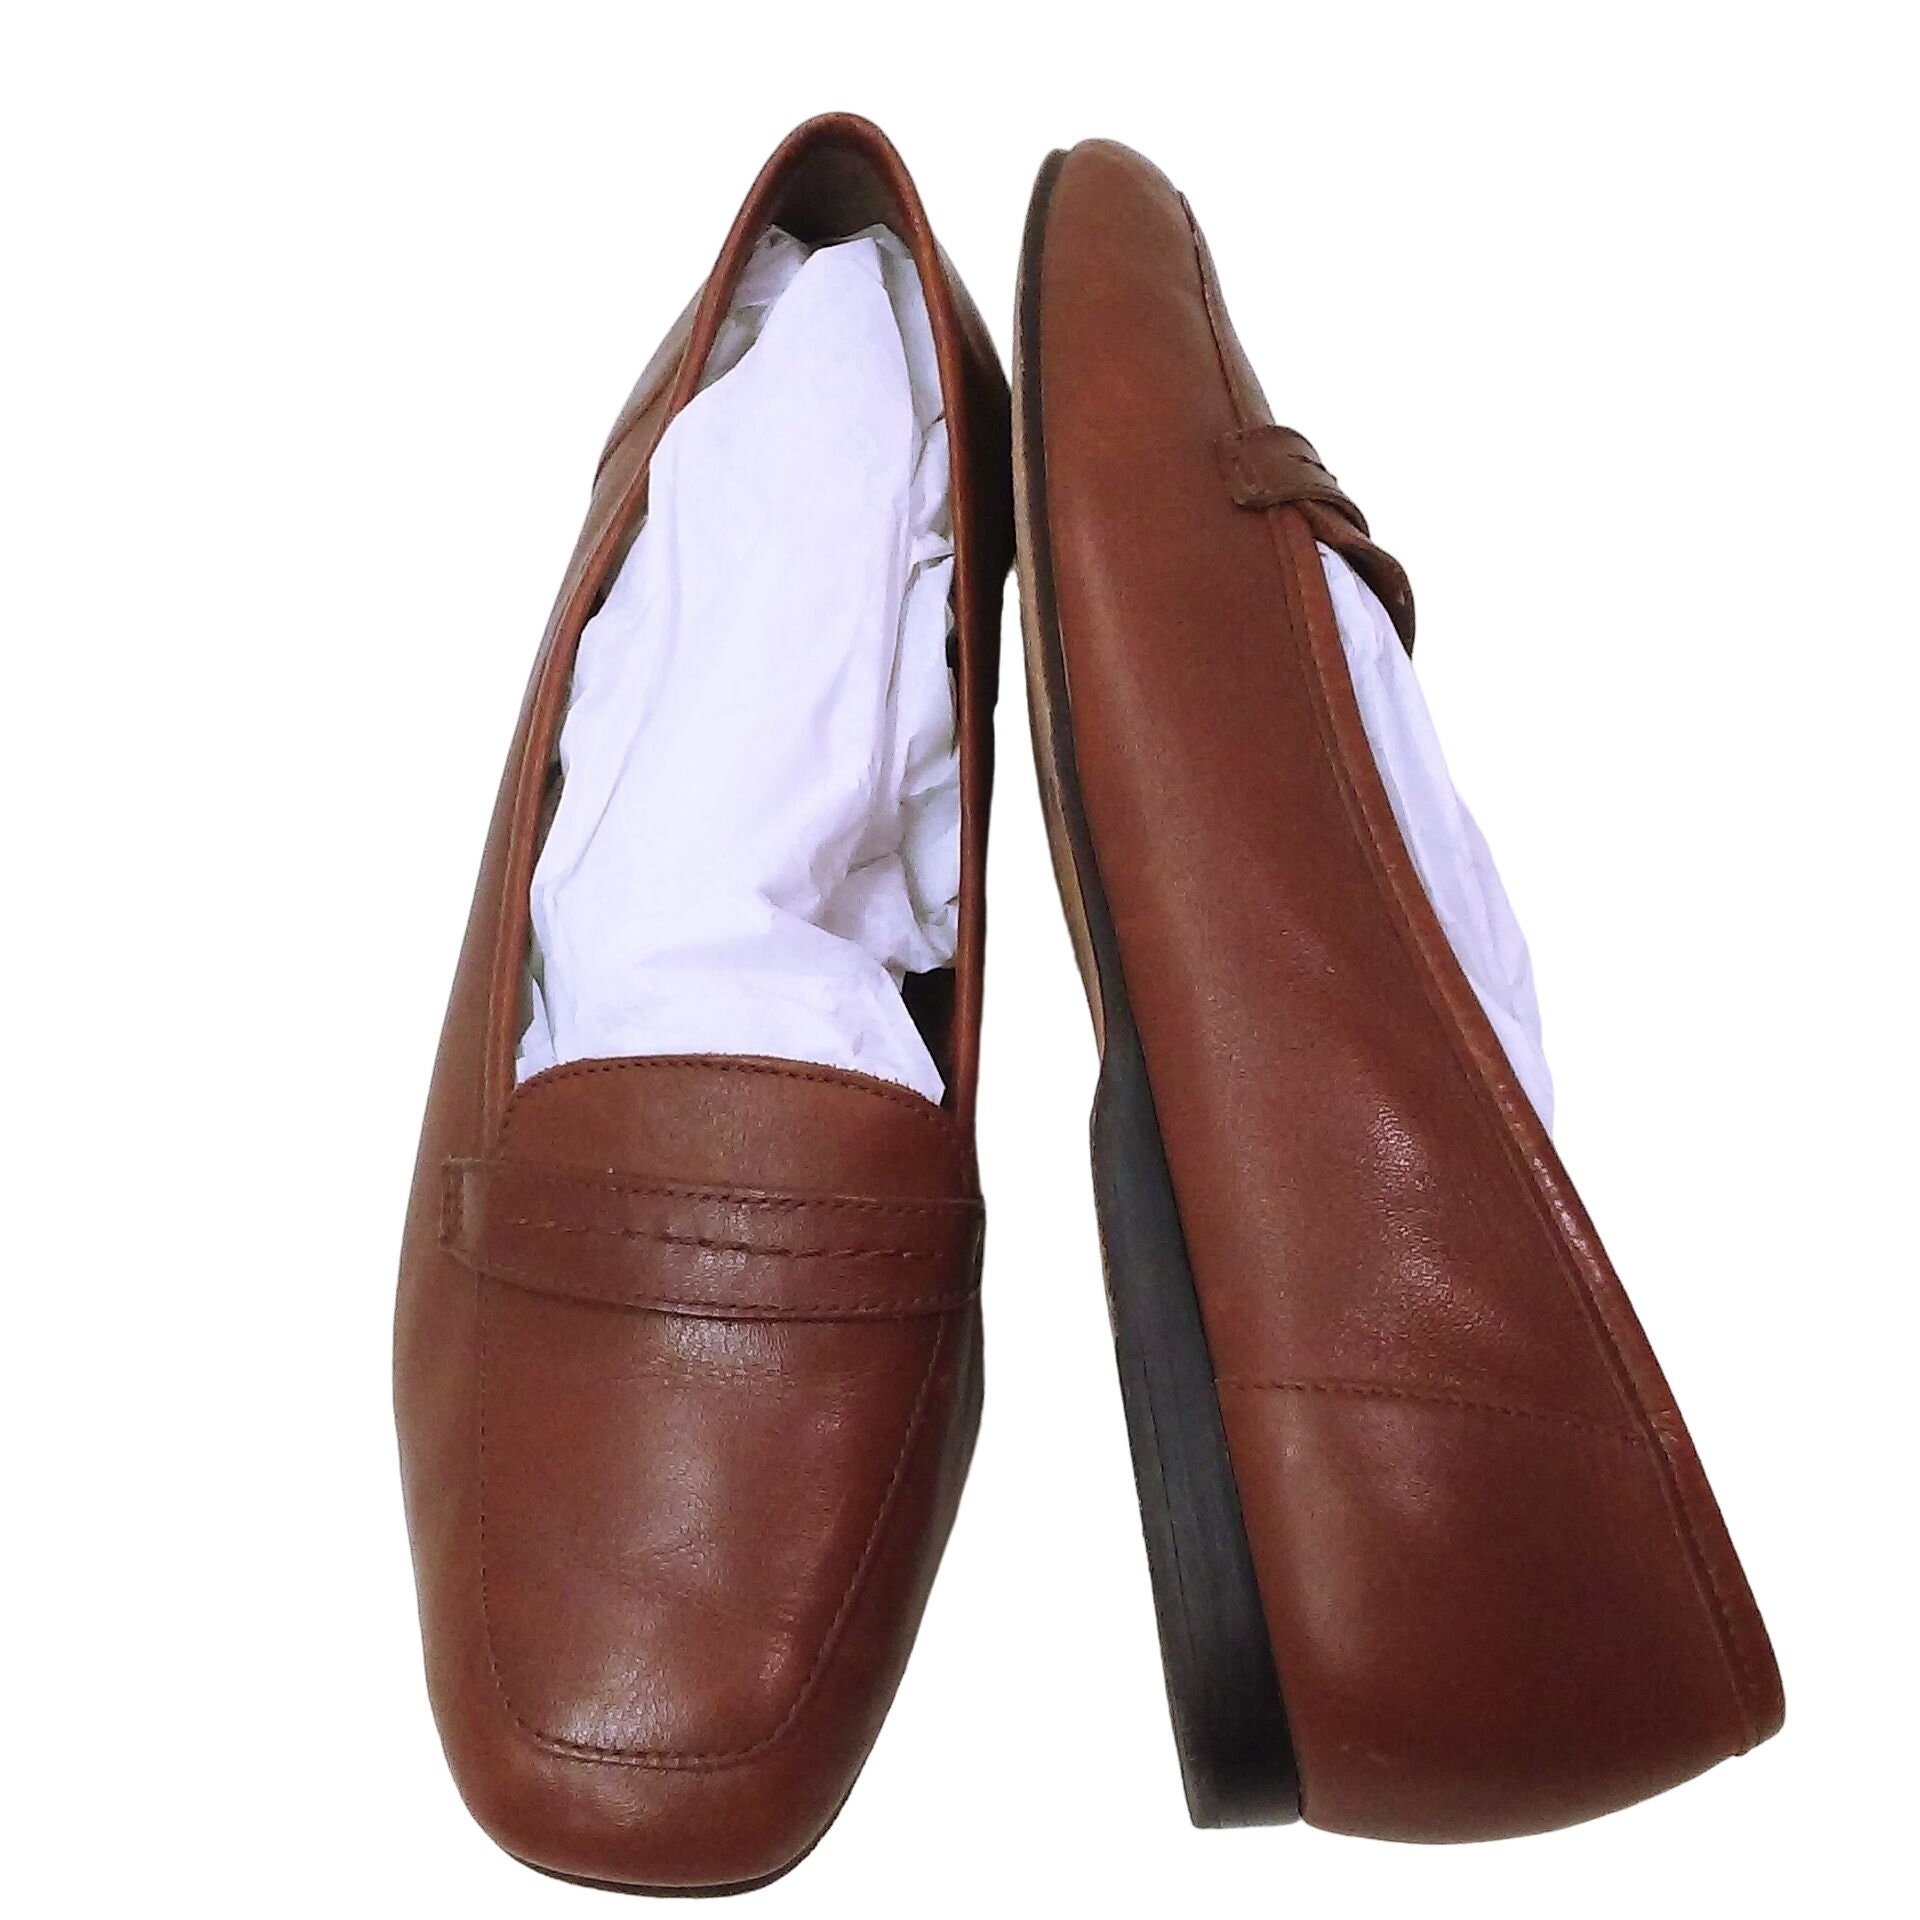 Vintage Mario Valentino Shoes Flats Soft Leather Brown Women’s Sz 8.5 Unique